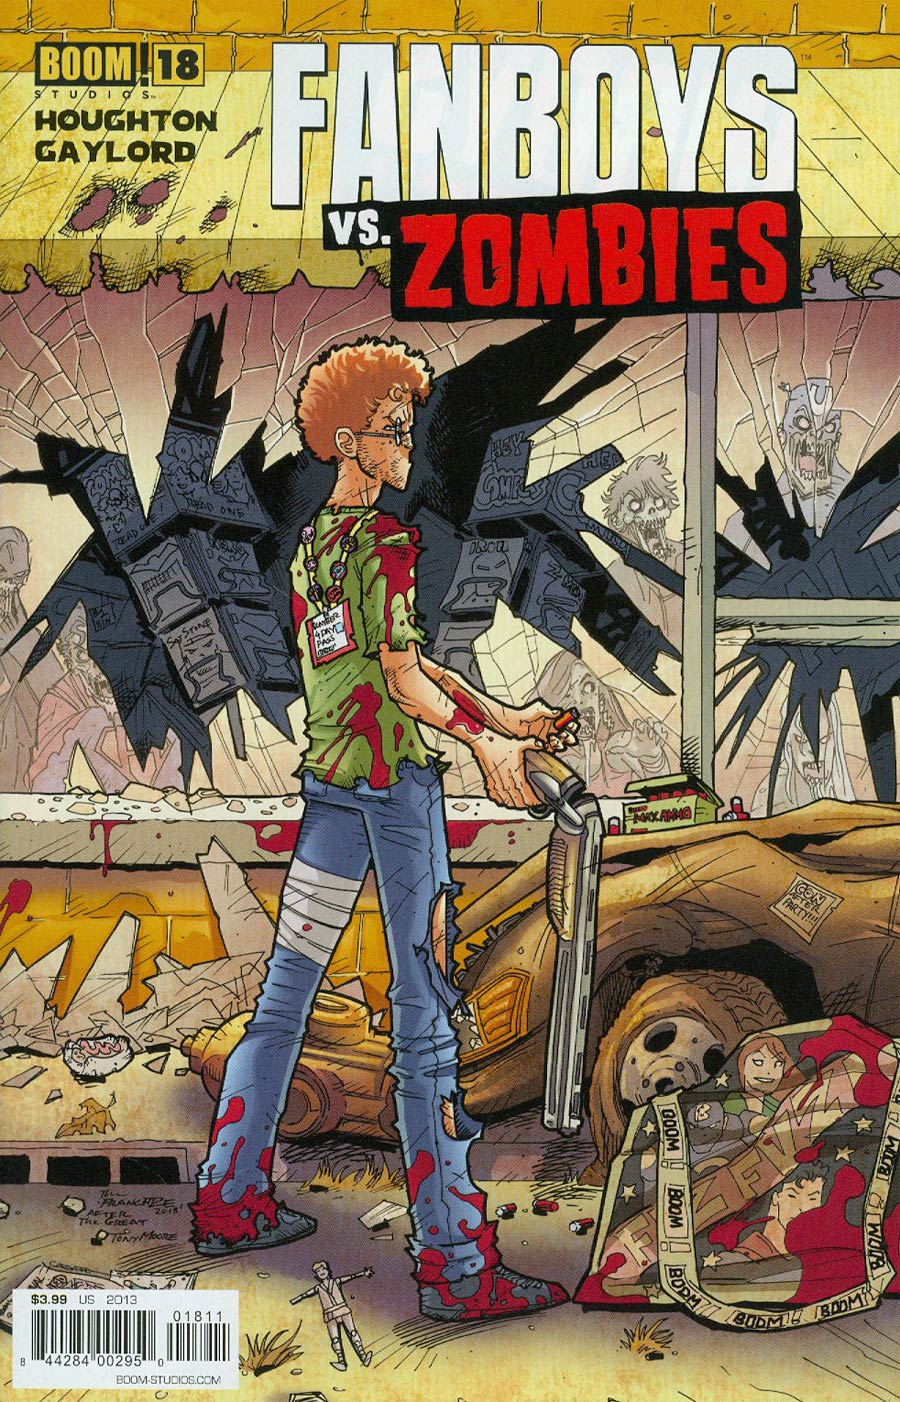 Fanboys vs Zombies #18